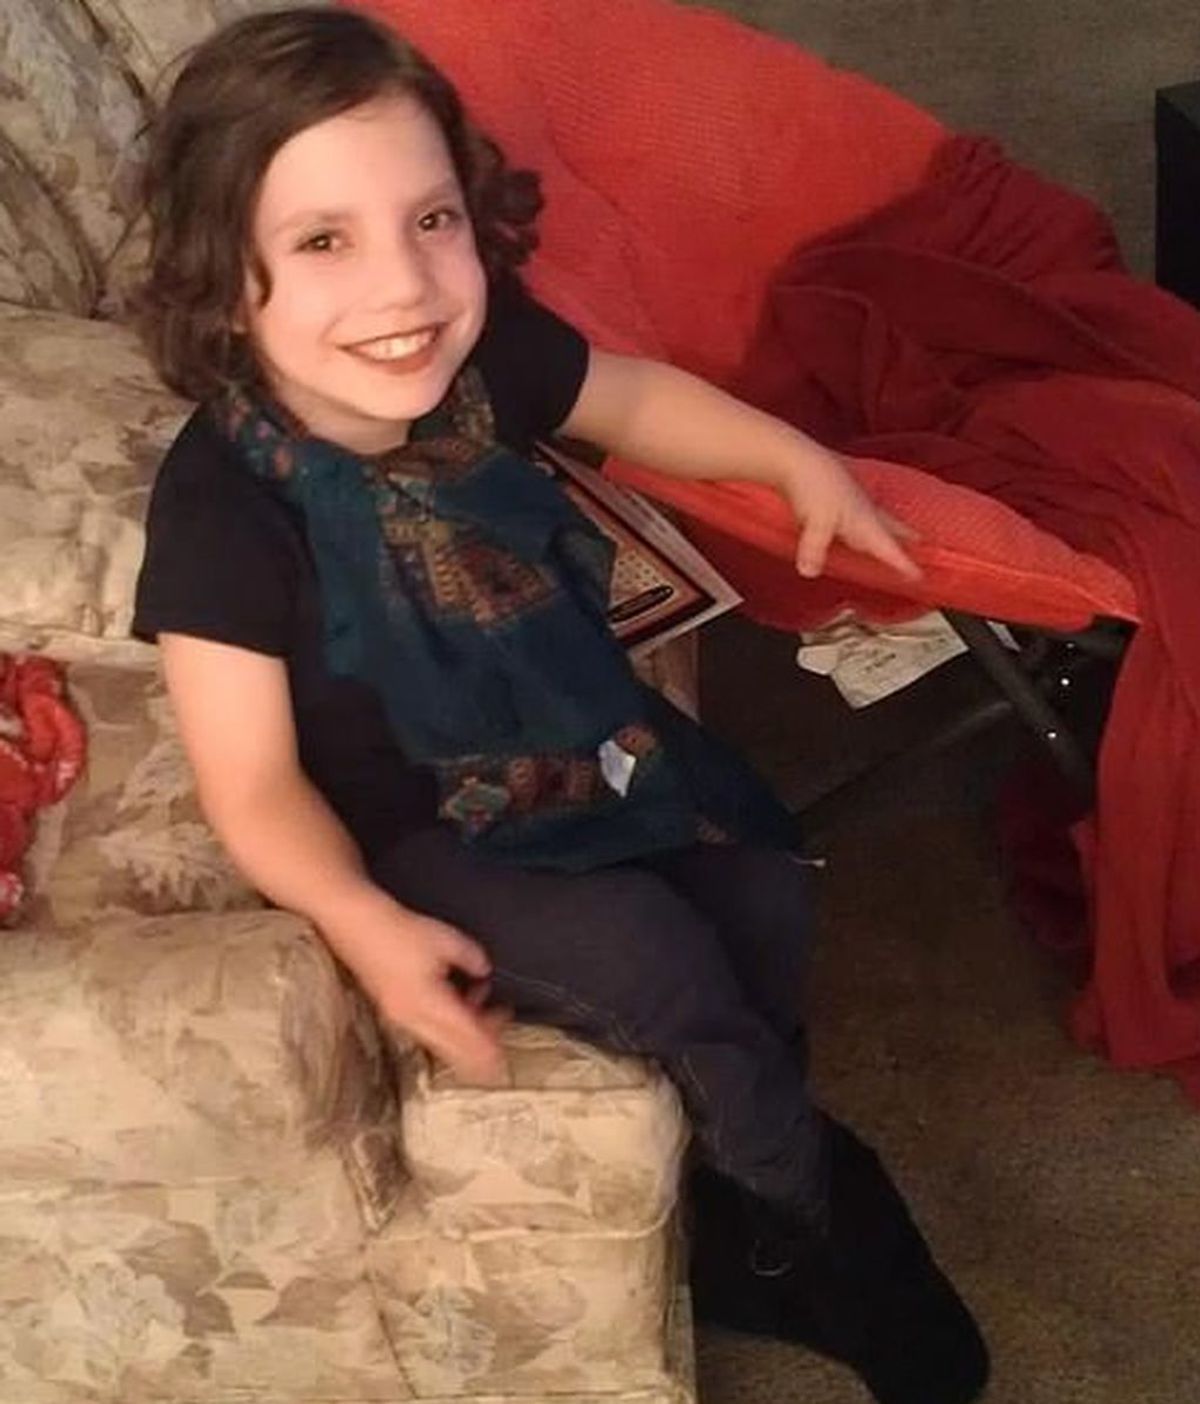 Los padres acusados de abandonar a su hija de 9 años dicen que es una adulta mentalmente enferma